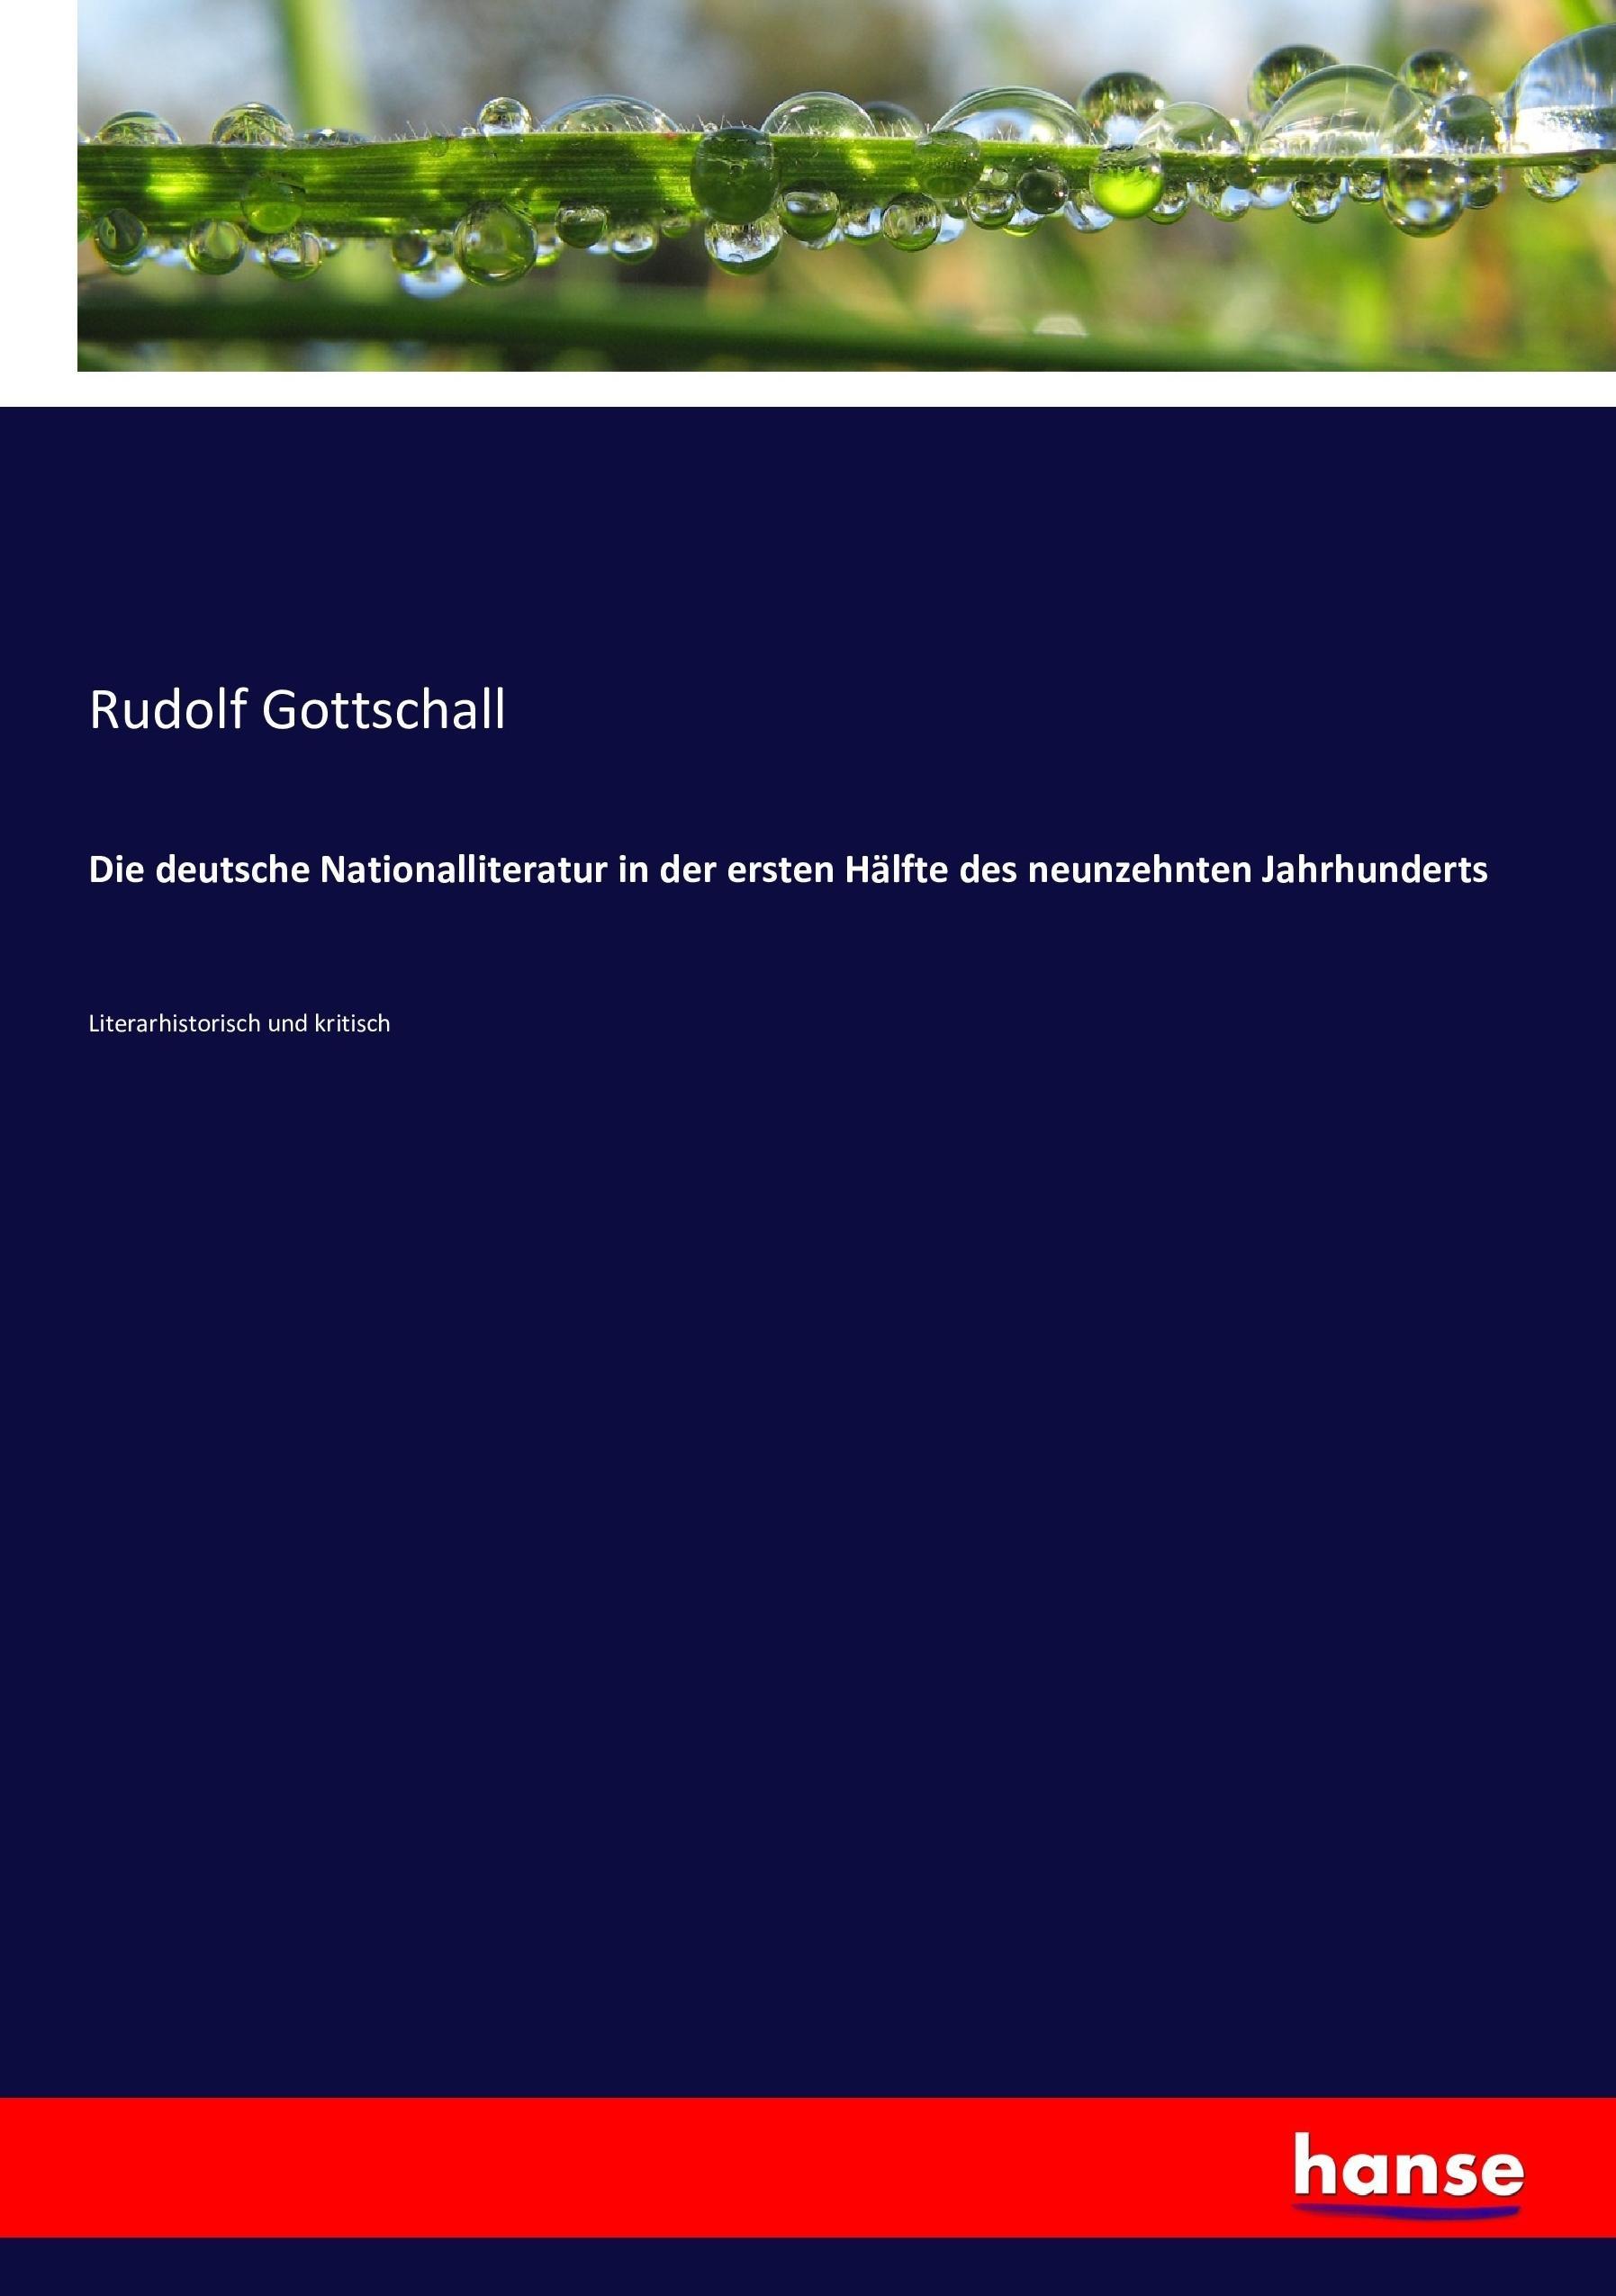 Die deutsche Nationalliteratur in der ersten Haelfte des neunzehnten Jahrhunderts - Gottschall, Rudolf